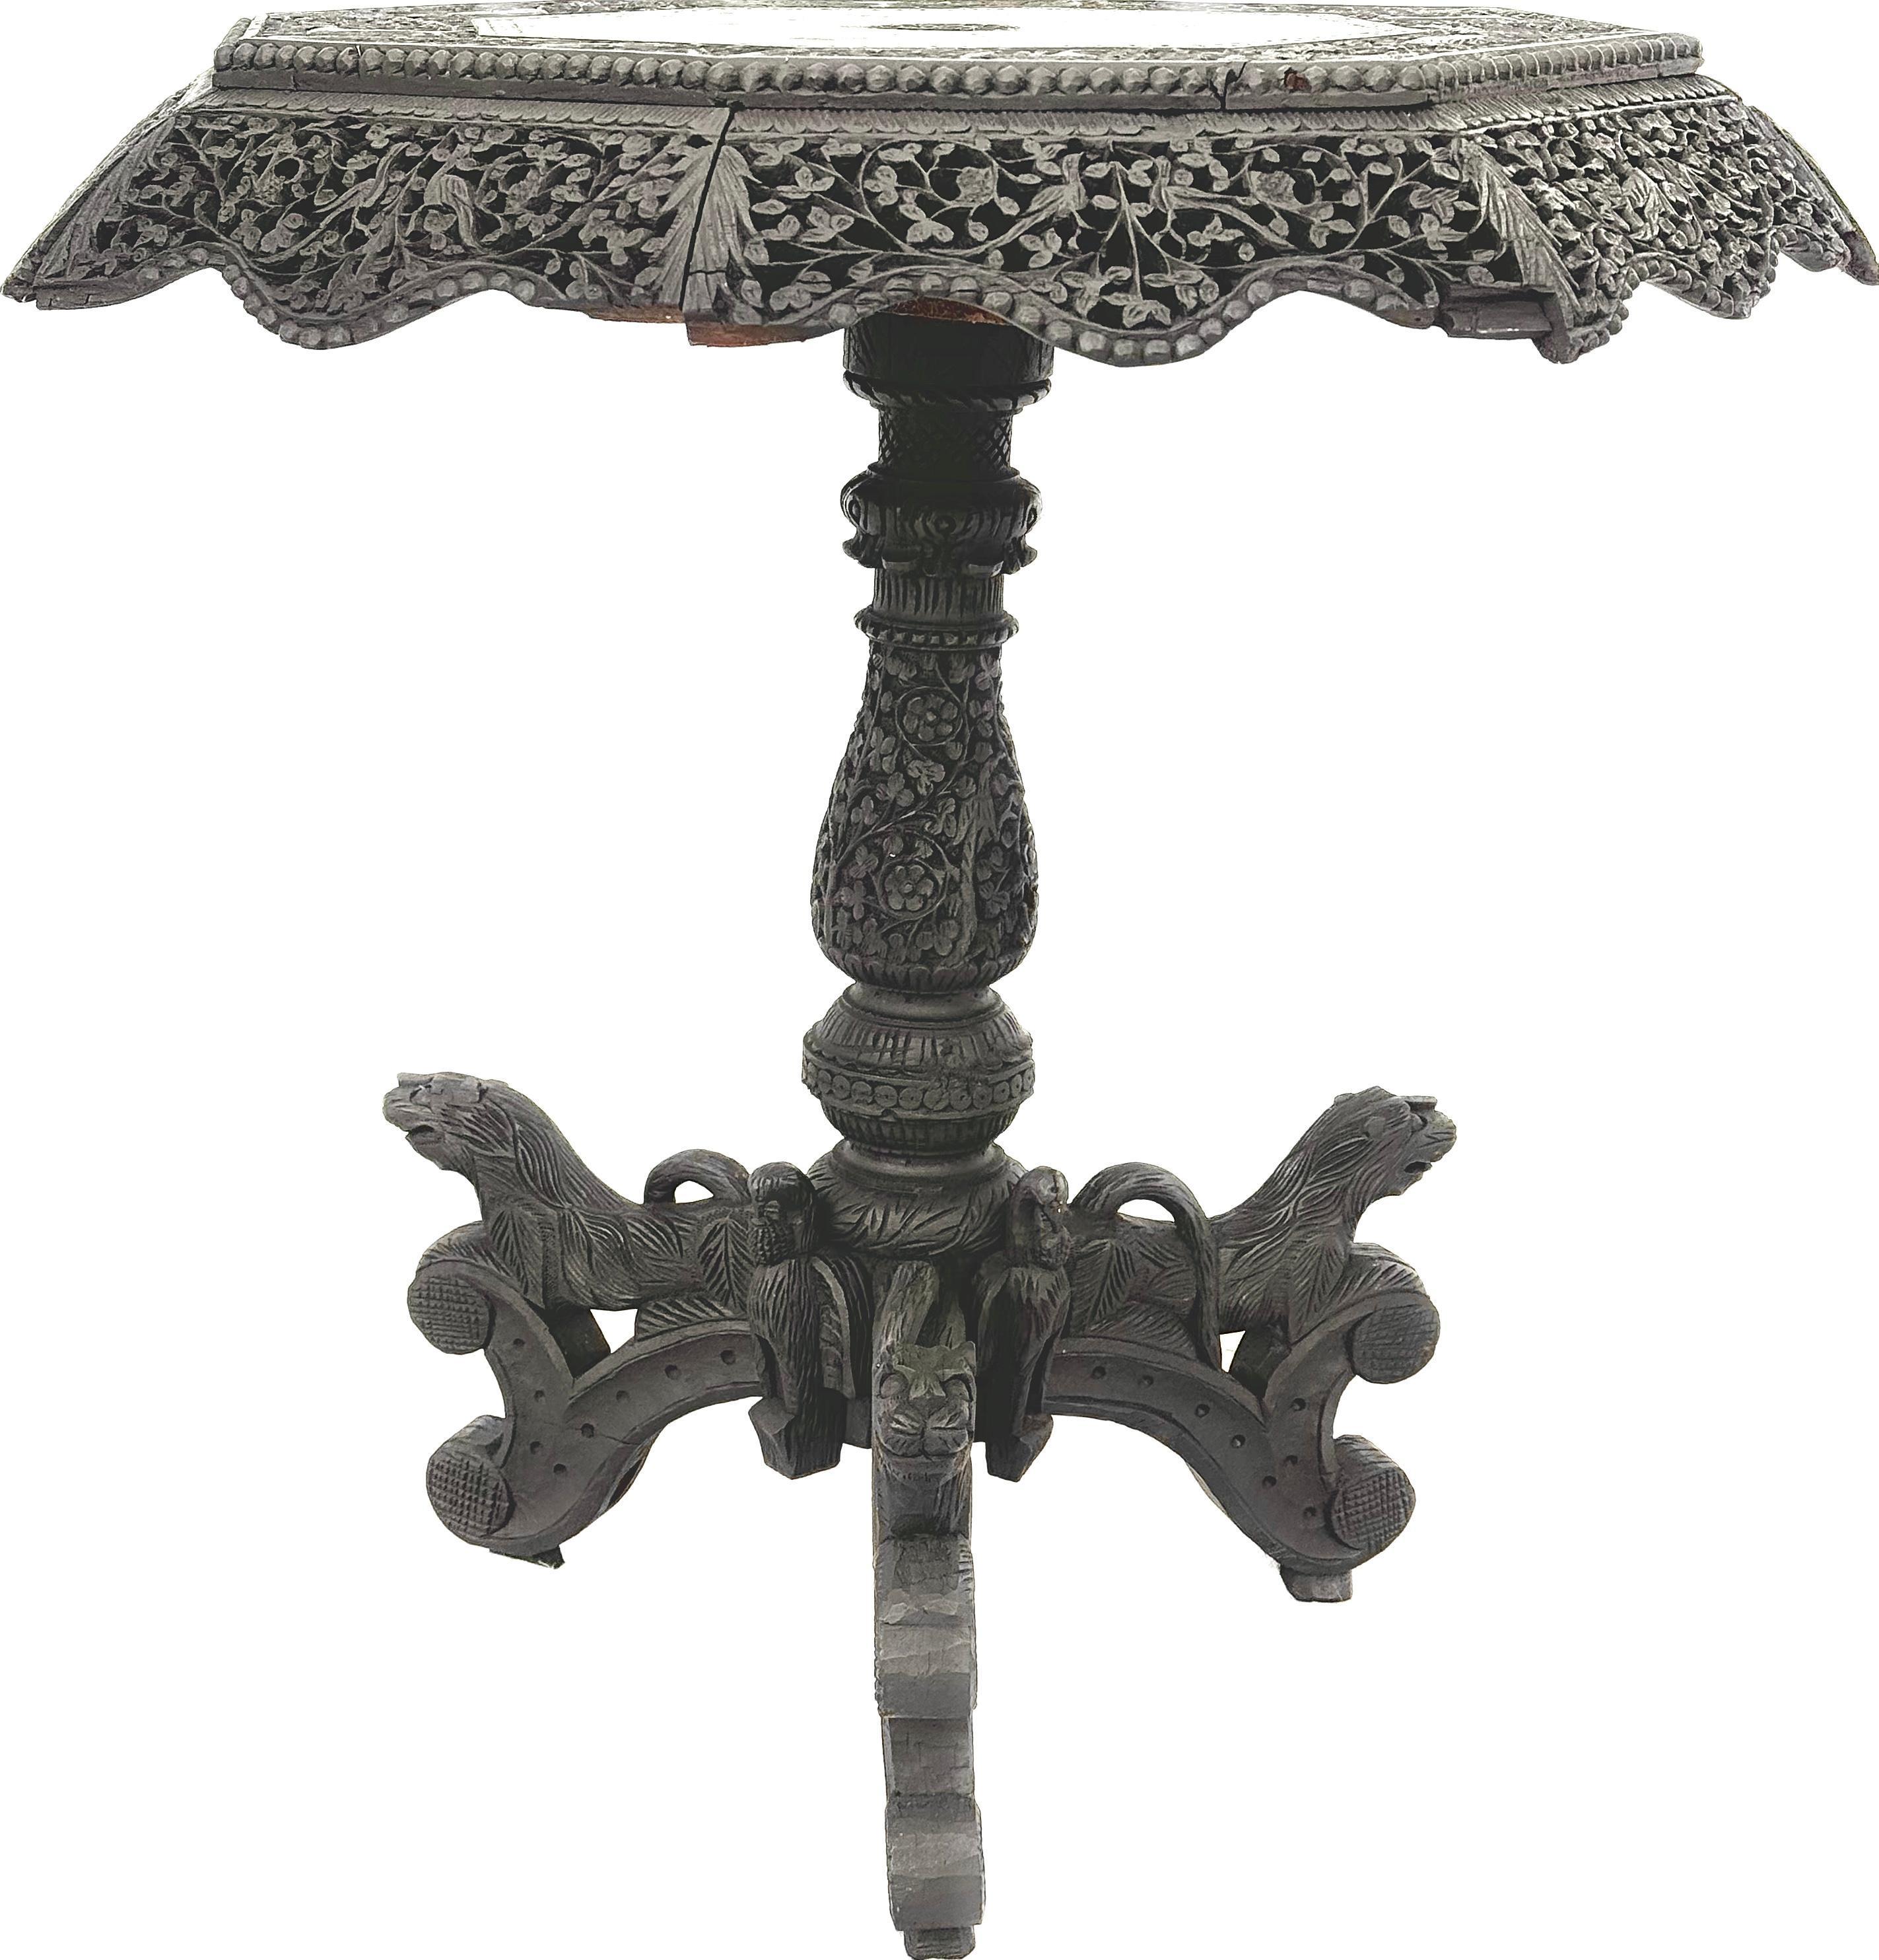 Exquisite 19. Jahrhundert geschnitzt birmanischen Anglo-Indianer runde Beistelltisch. Der Tisch hat eine kunstvoll geschnitzte und filigrane Schürze und einen Sockel. Der Sockel ist mit geschnitzten Tigerköpfen auf dreibeinigen Beinen verziert. 